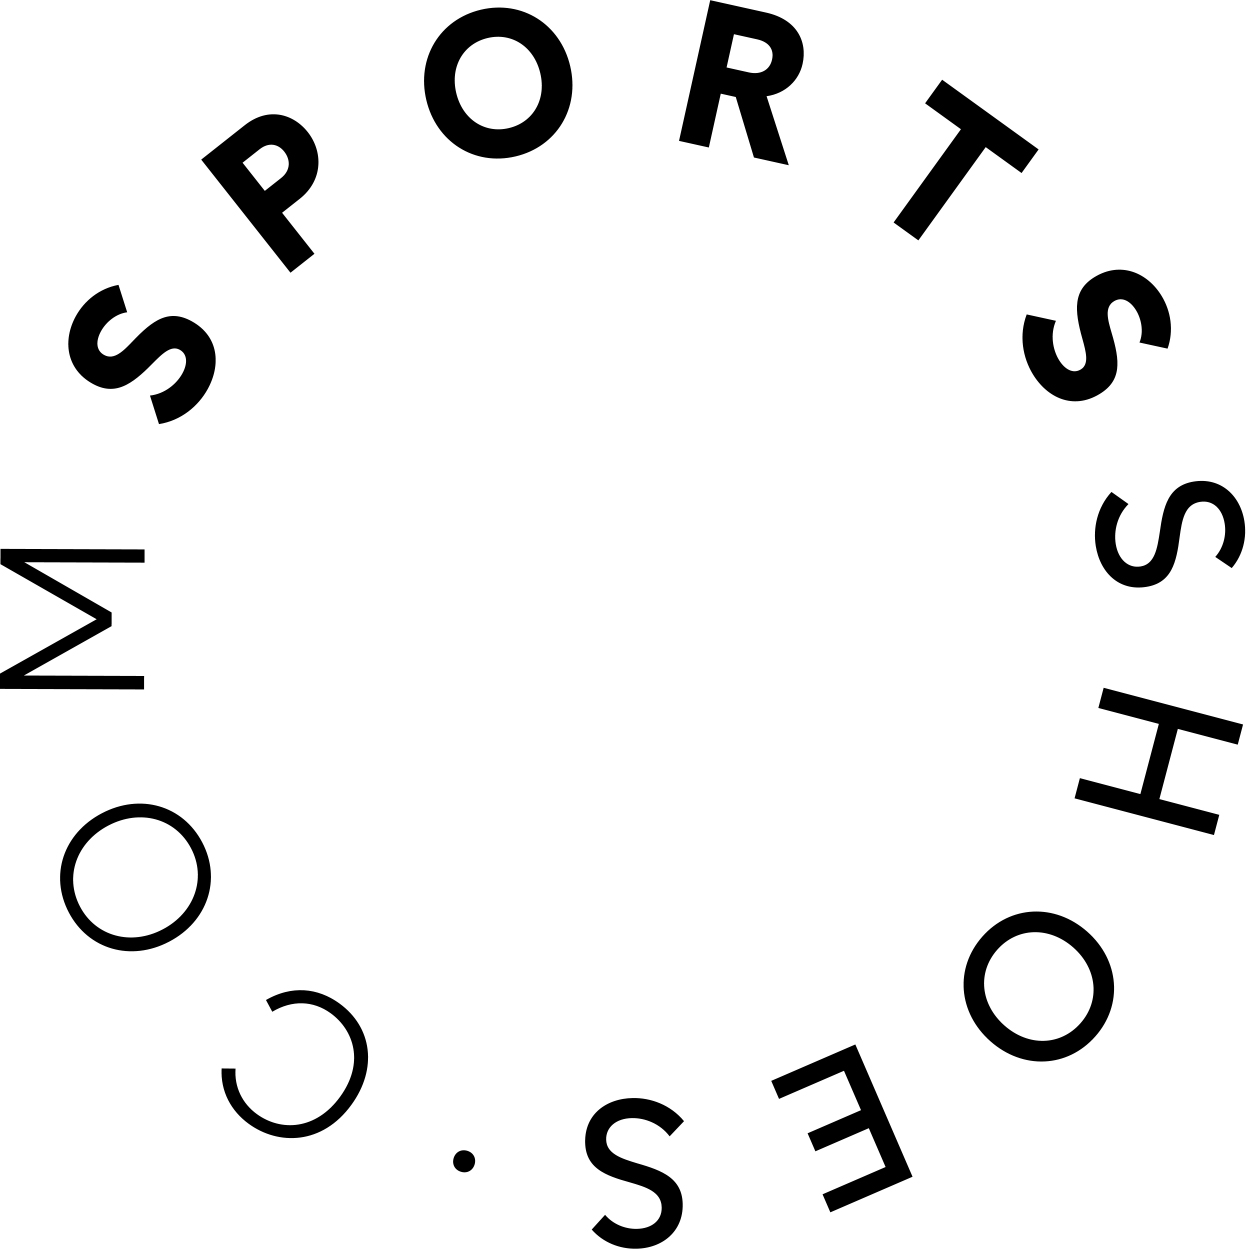 descuento Sportsshoes Envío gratis 100€ Código descuento Diciembre España